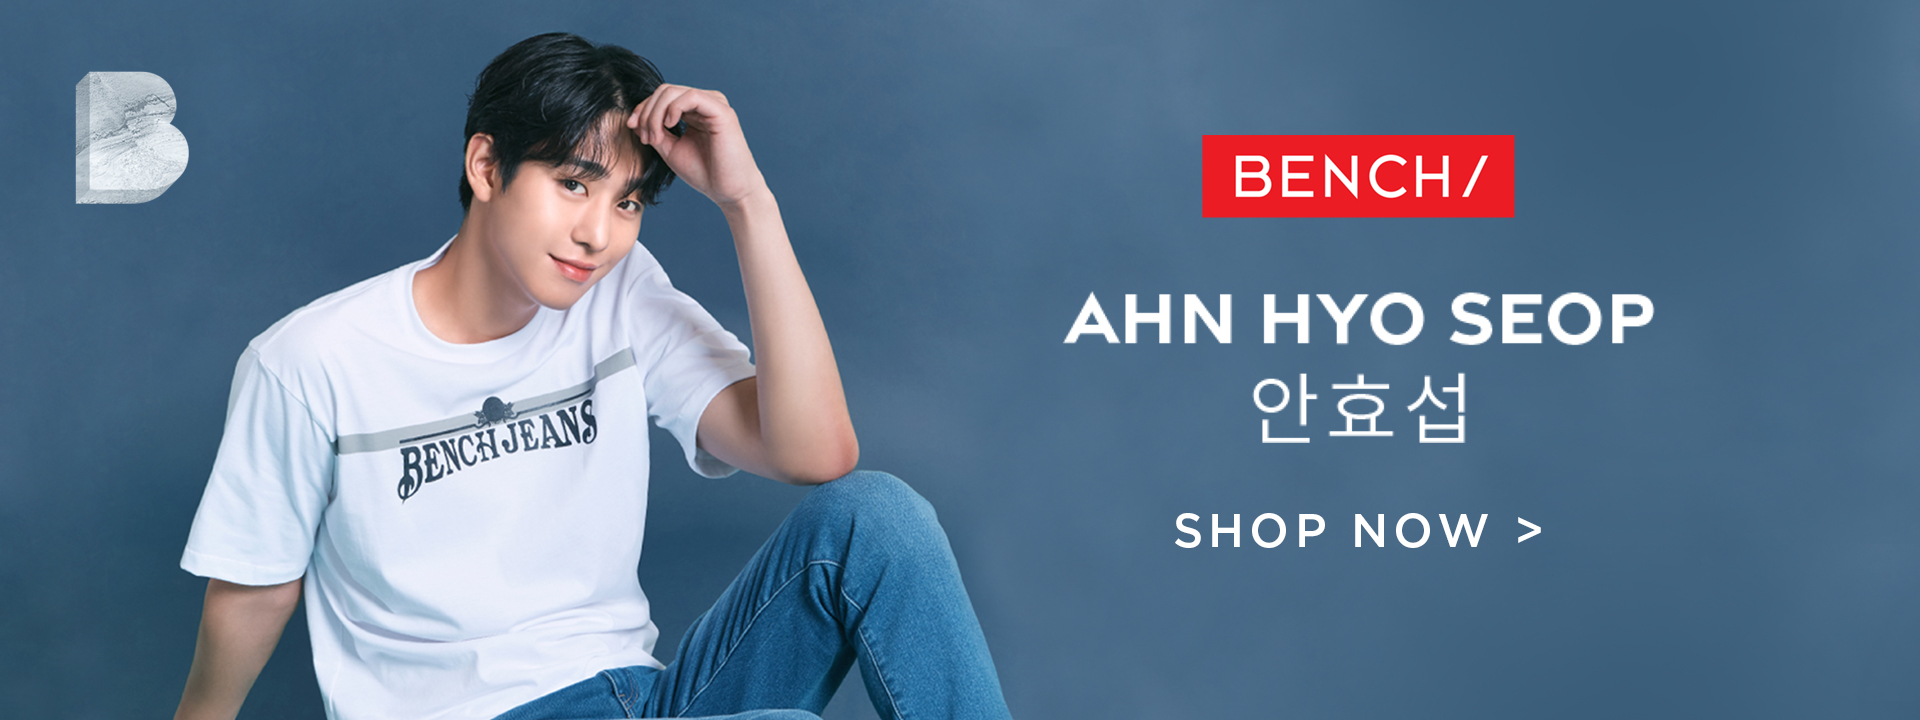 Homepage-Web-Ahn Hyo Seop